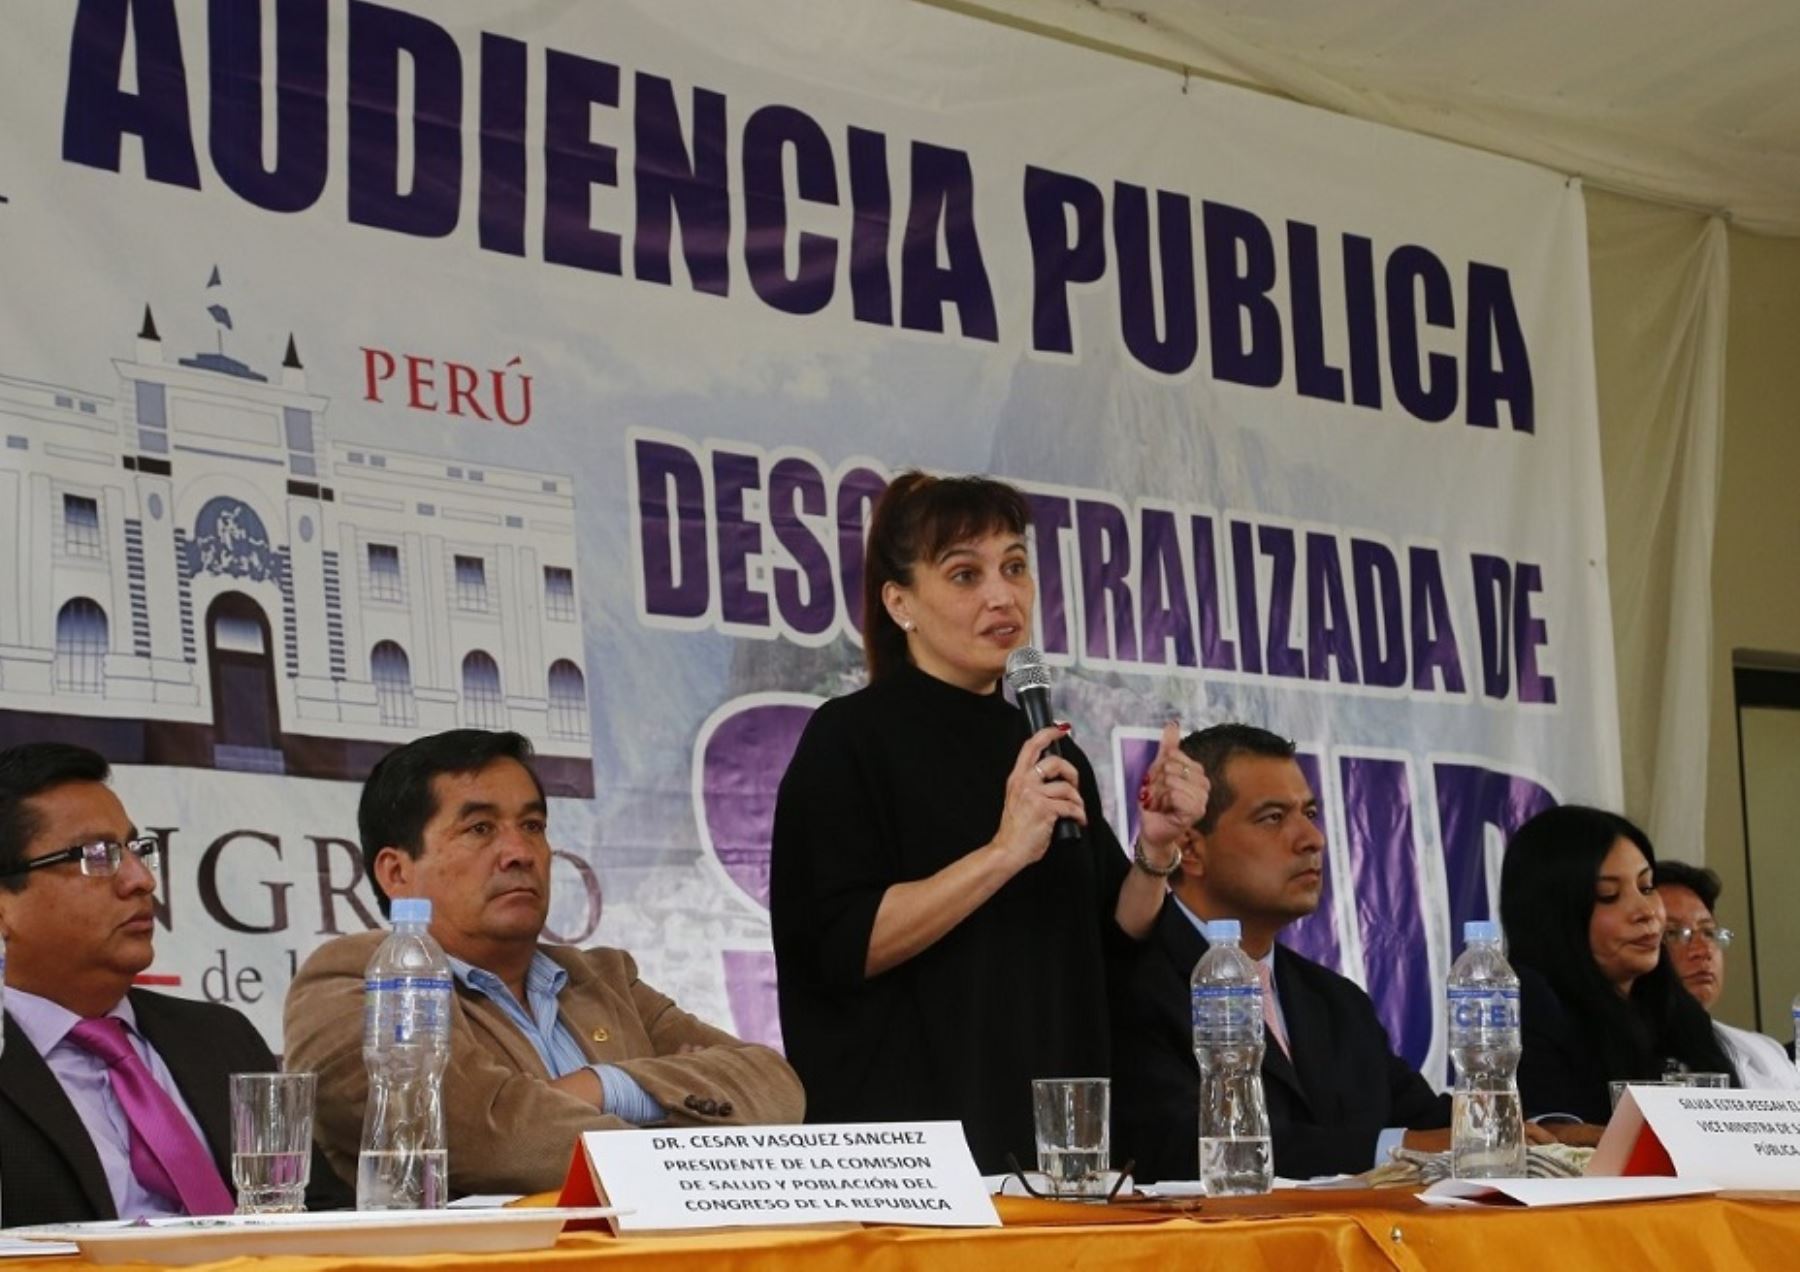 La viceministra de de Salud Pública Silvia Pessah Eljay interviene en Primera Audiencia Pública Descentralizada de Salud de la región Cusco.